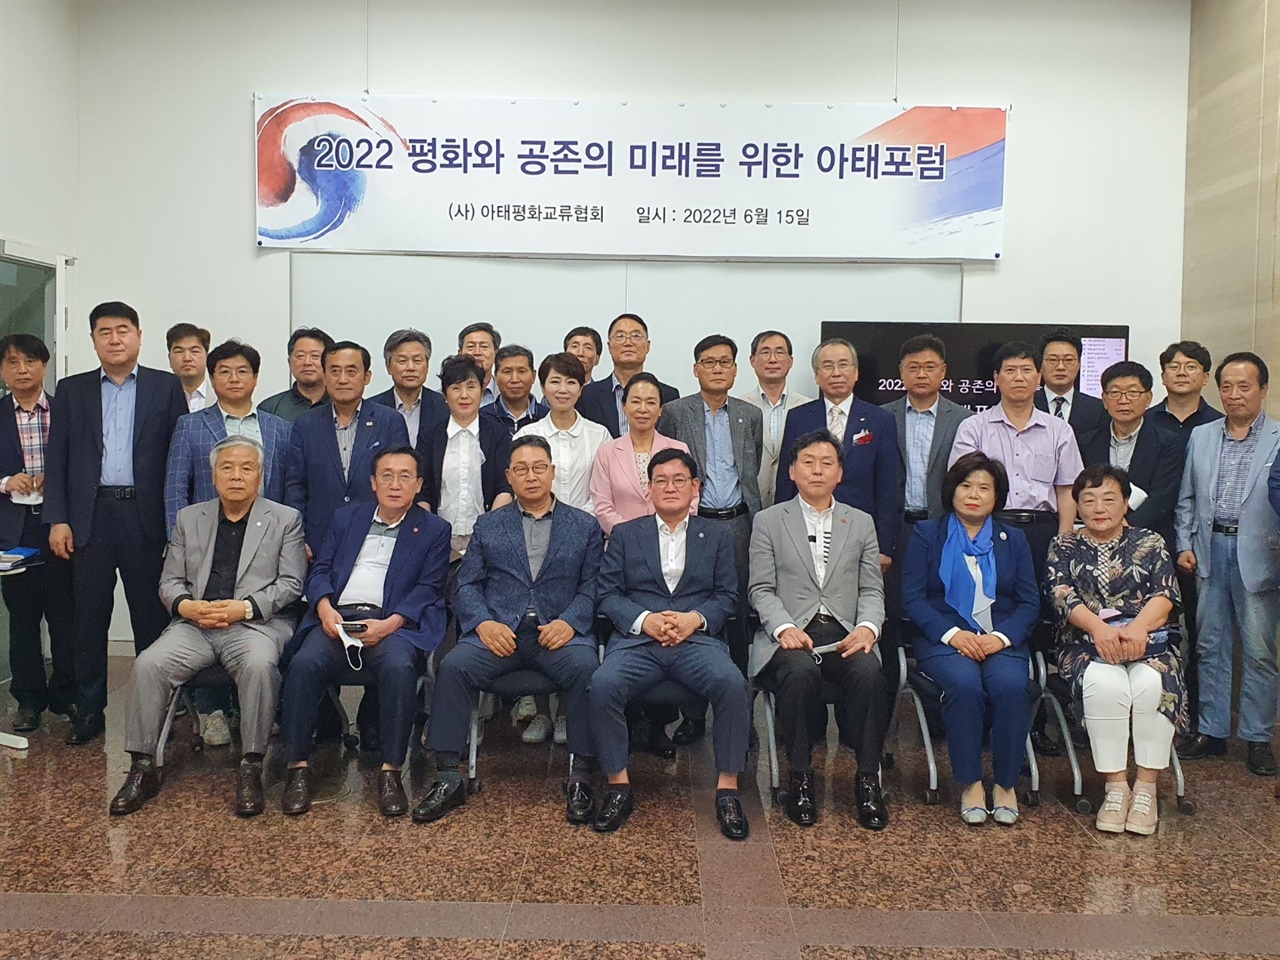 (사)아태평화교류협회 주관으로 ‘2022 아태포럼’이 개최되었다.